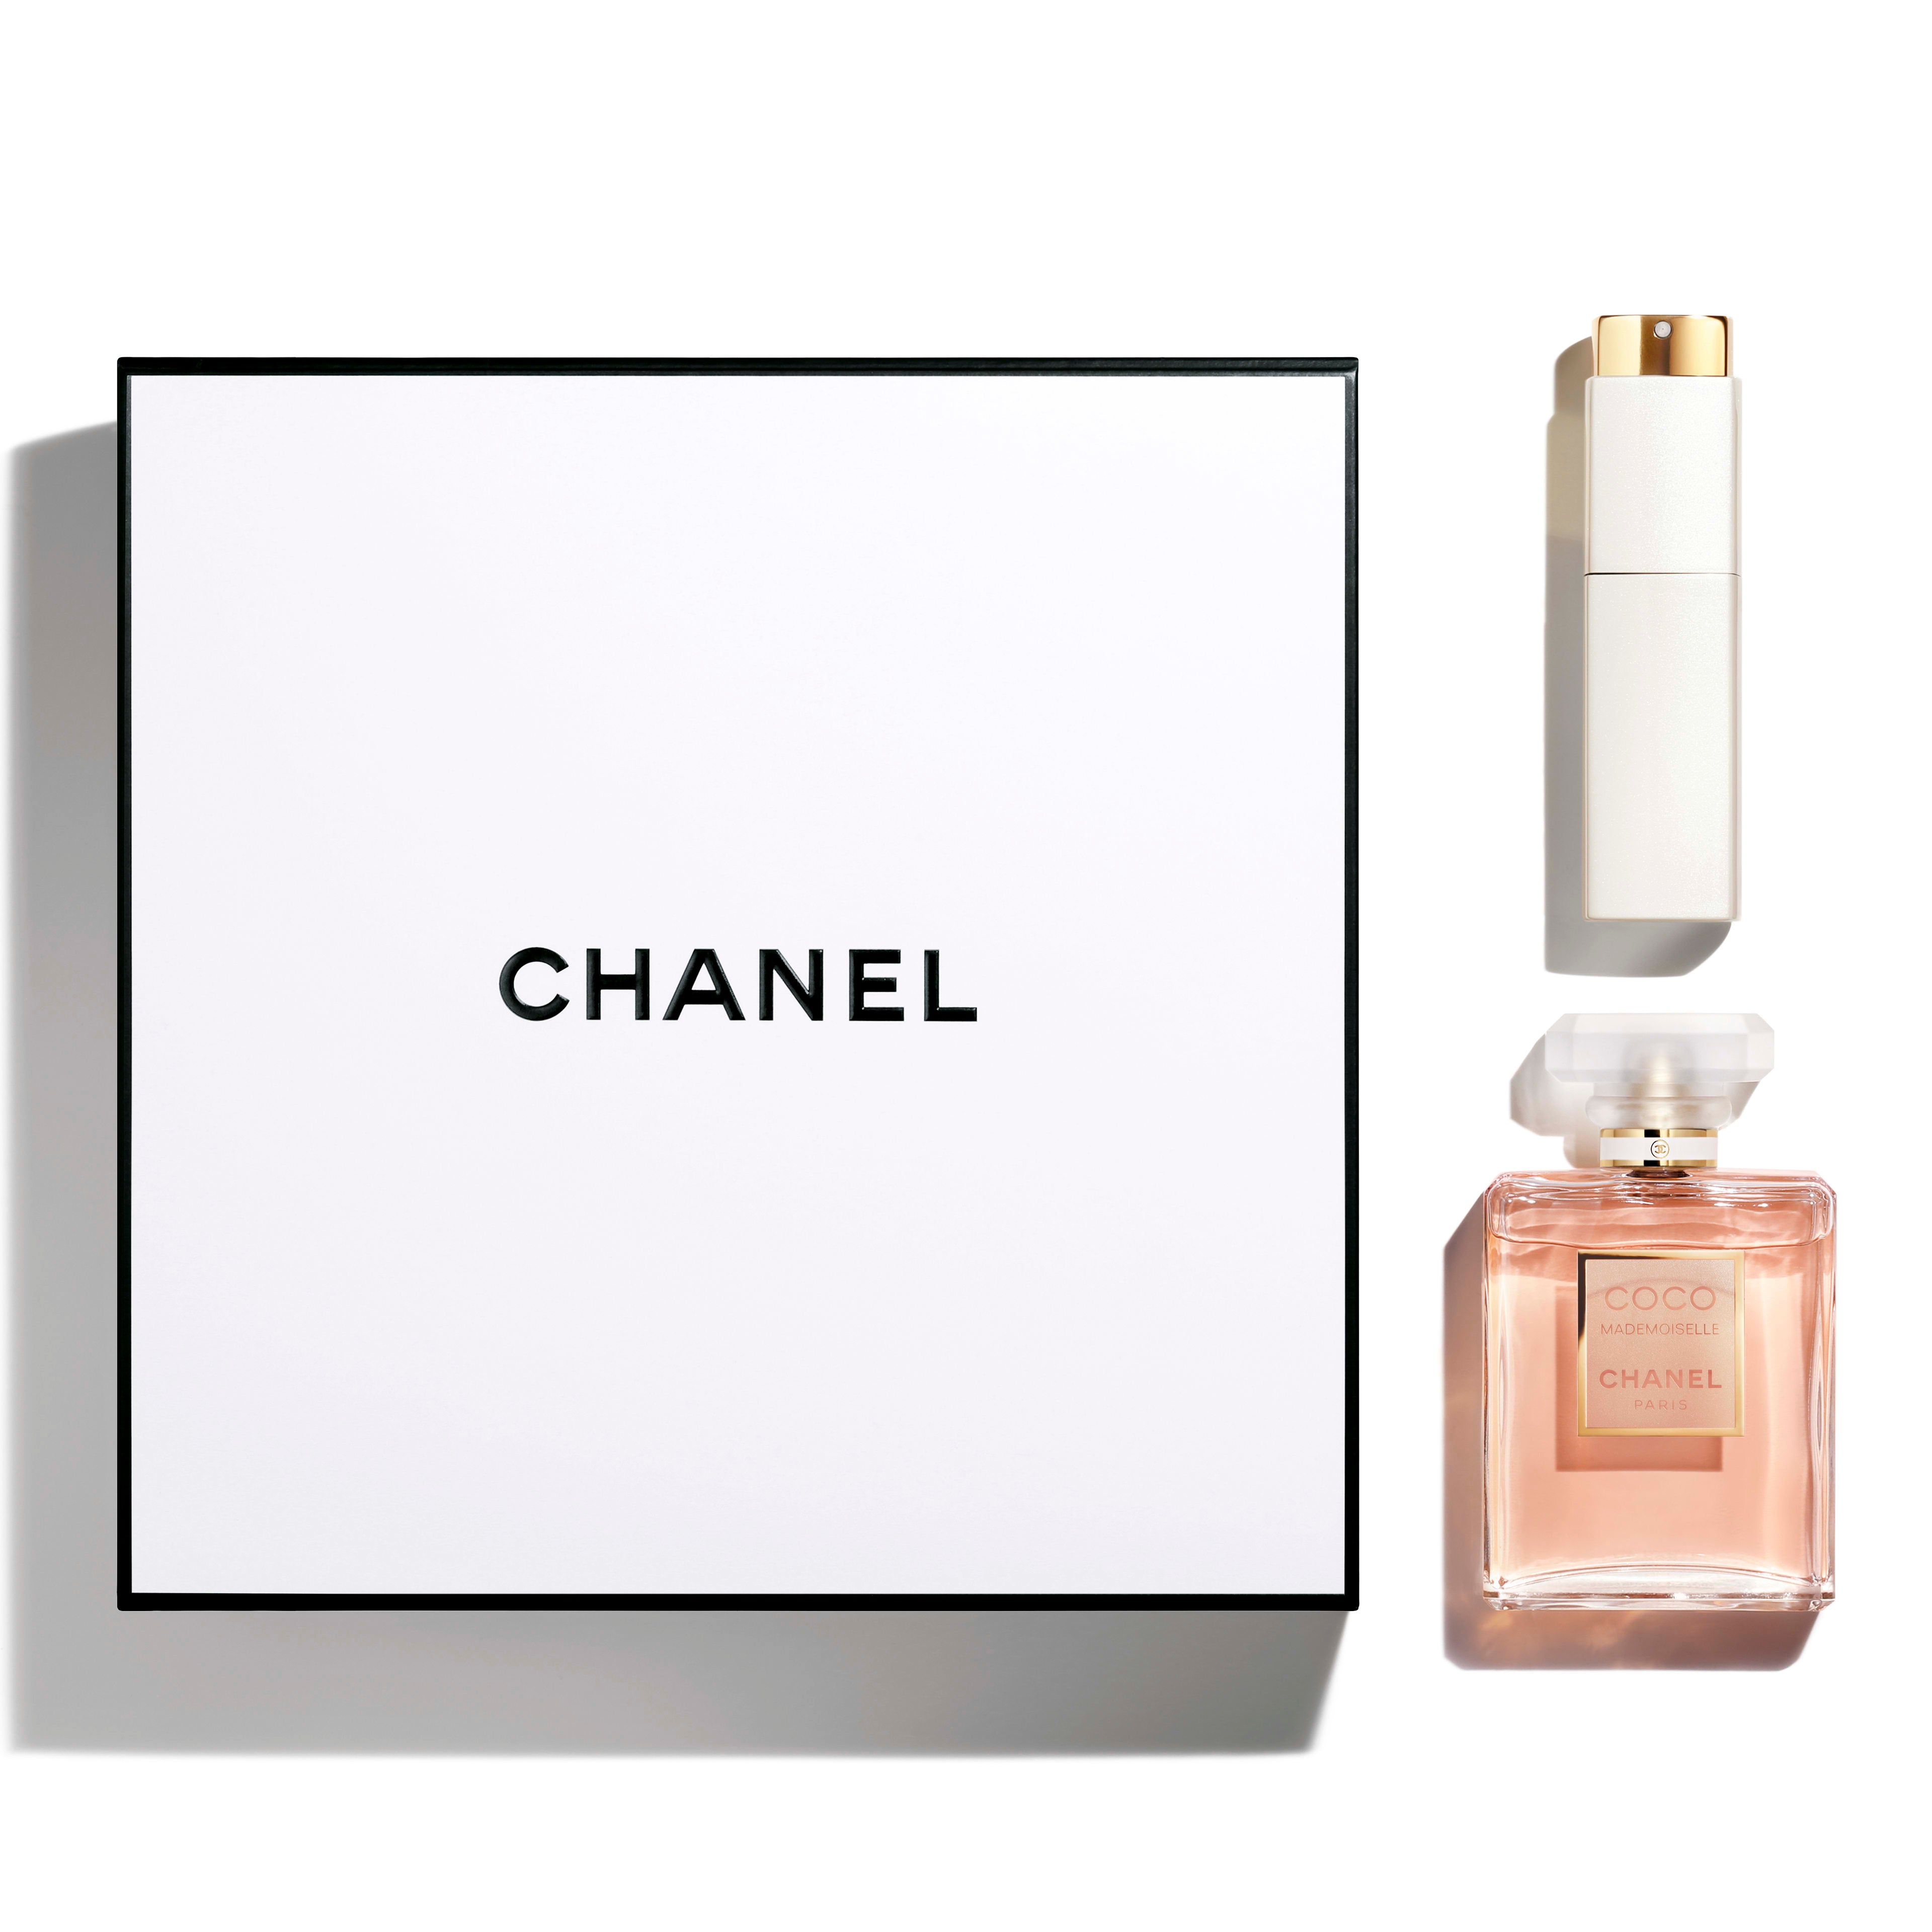 Eau De Toilette Chanel Eau Fraiche, Coco, No. 5, Allure 3x30ml Set 3 In 1  Chanel Gift Set For Women And Men - Antiperspirants - AliExpress